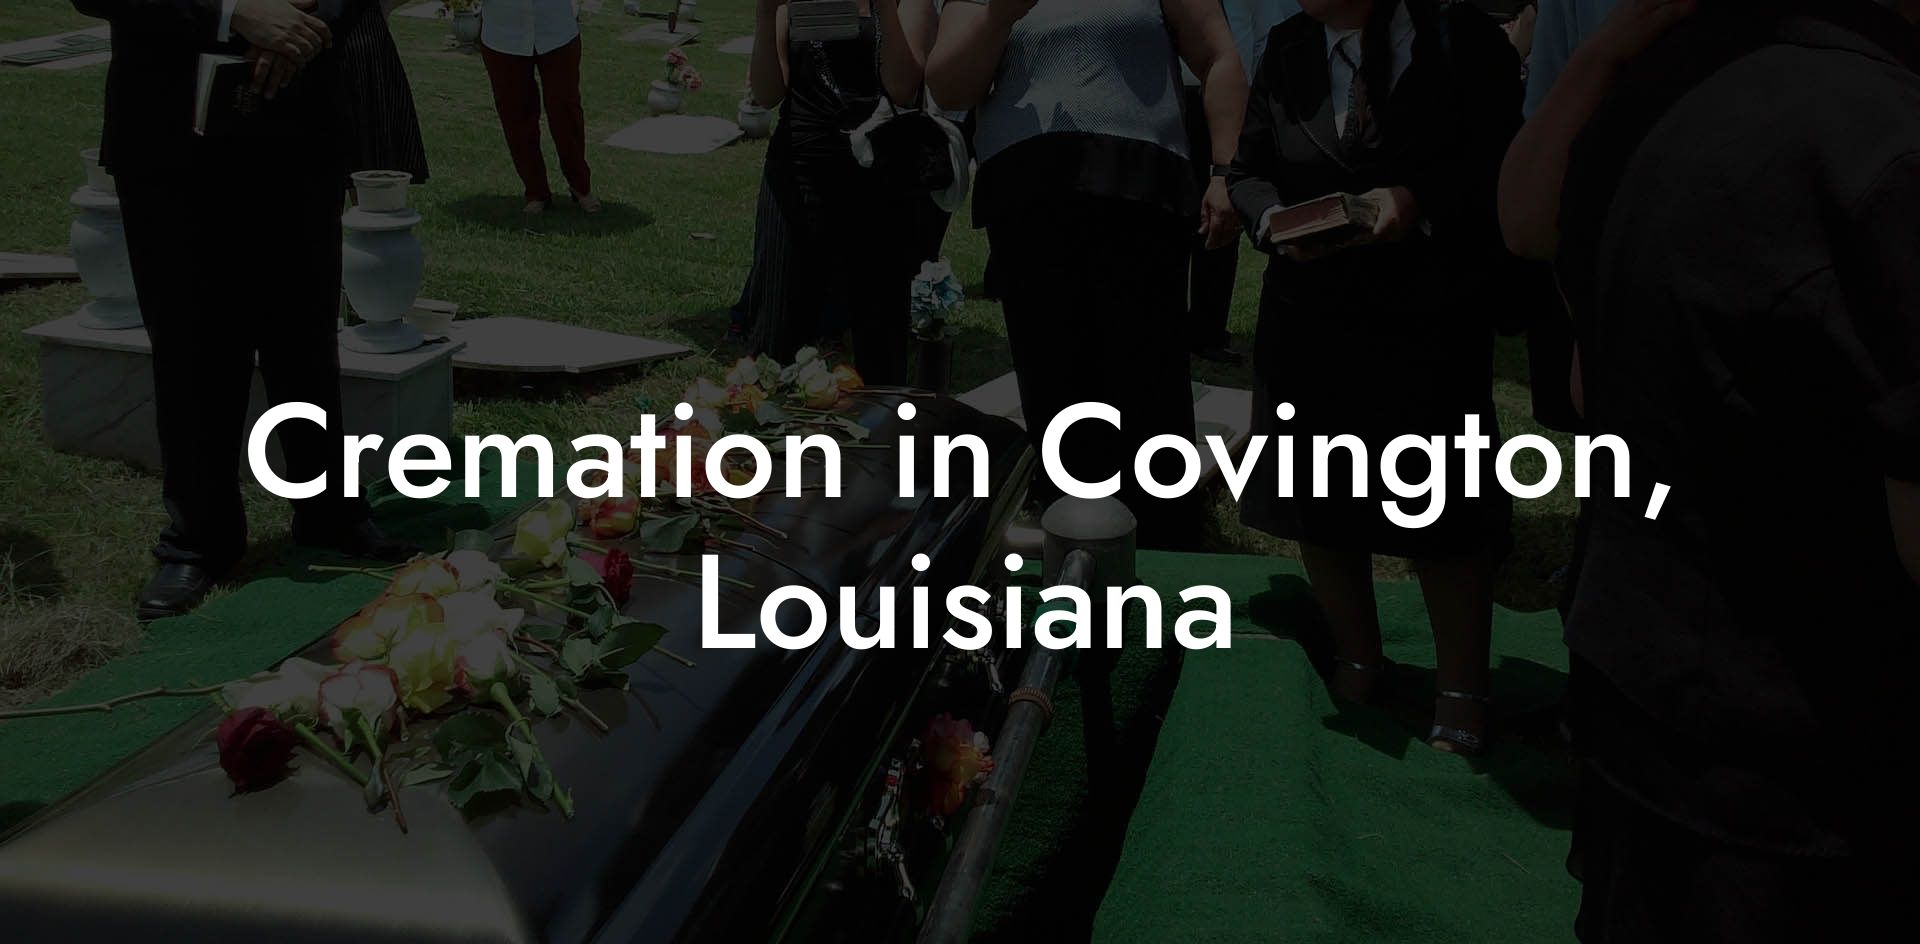 Cremation in Covington, Louisiana